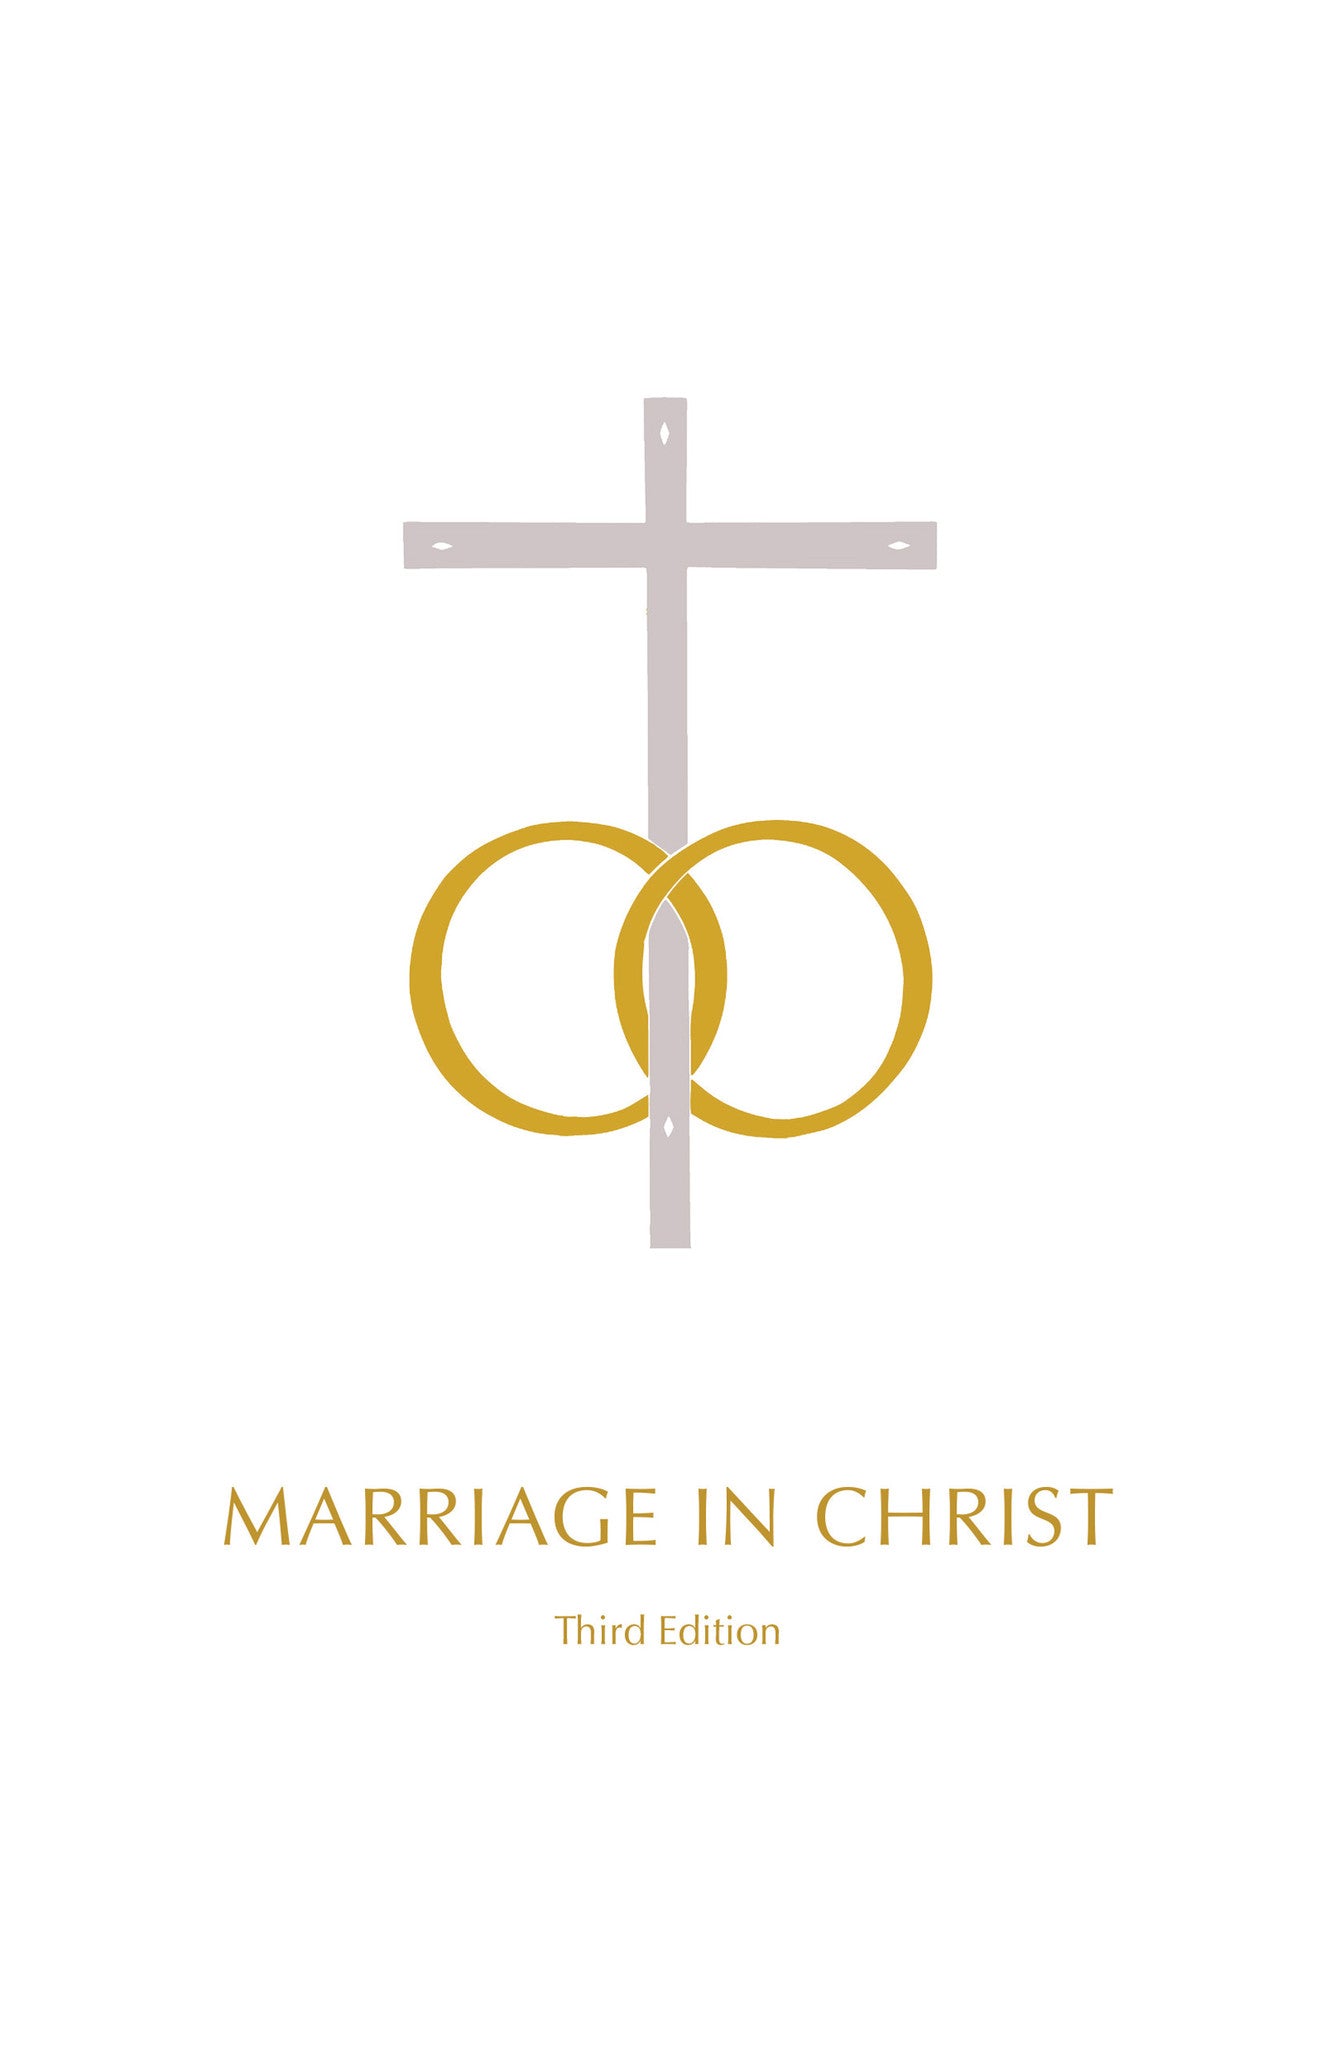 Matrimonio en Cristo